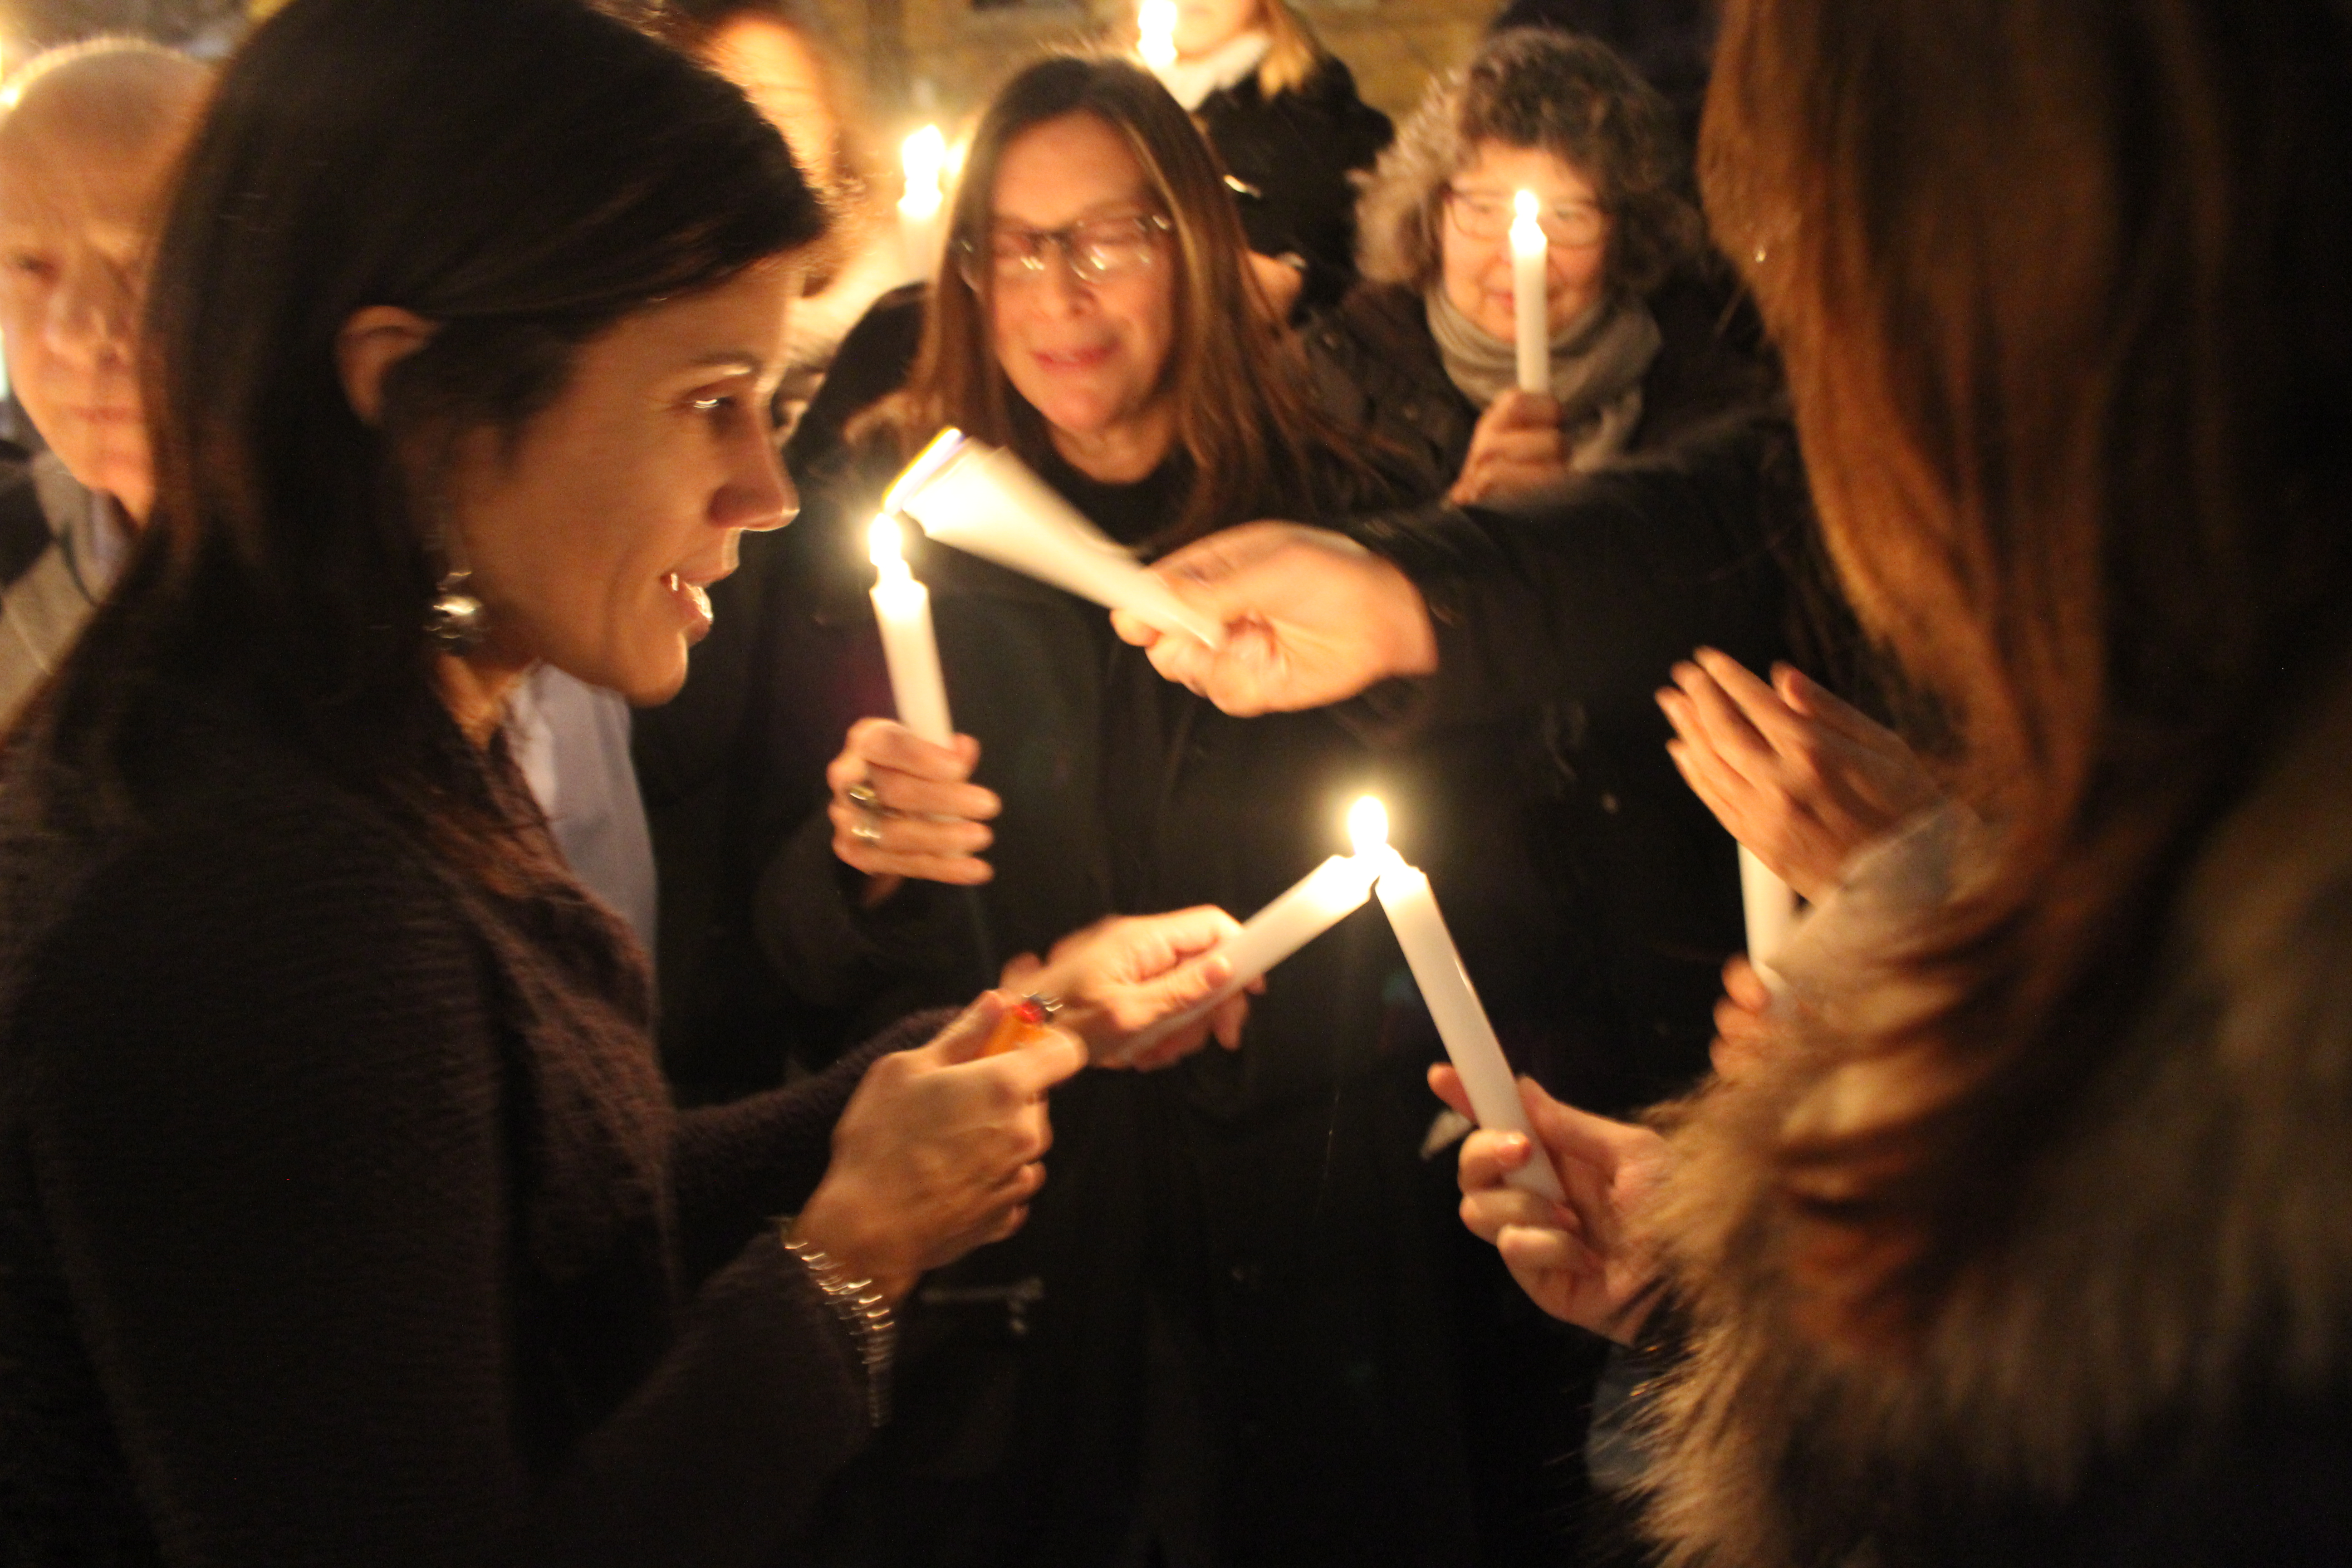  تجمع موظفو وأنصار آيفكس خلال وقفة الشموع الاحتجاجية في تورونتو بتاريخ 19 تشرين الثاني عام 2014 لإظهار التضامن مع حملة المليون شمعة قبل ذكرى مذبحة امباتوان